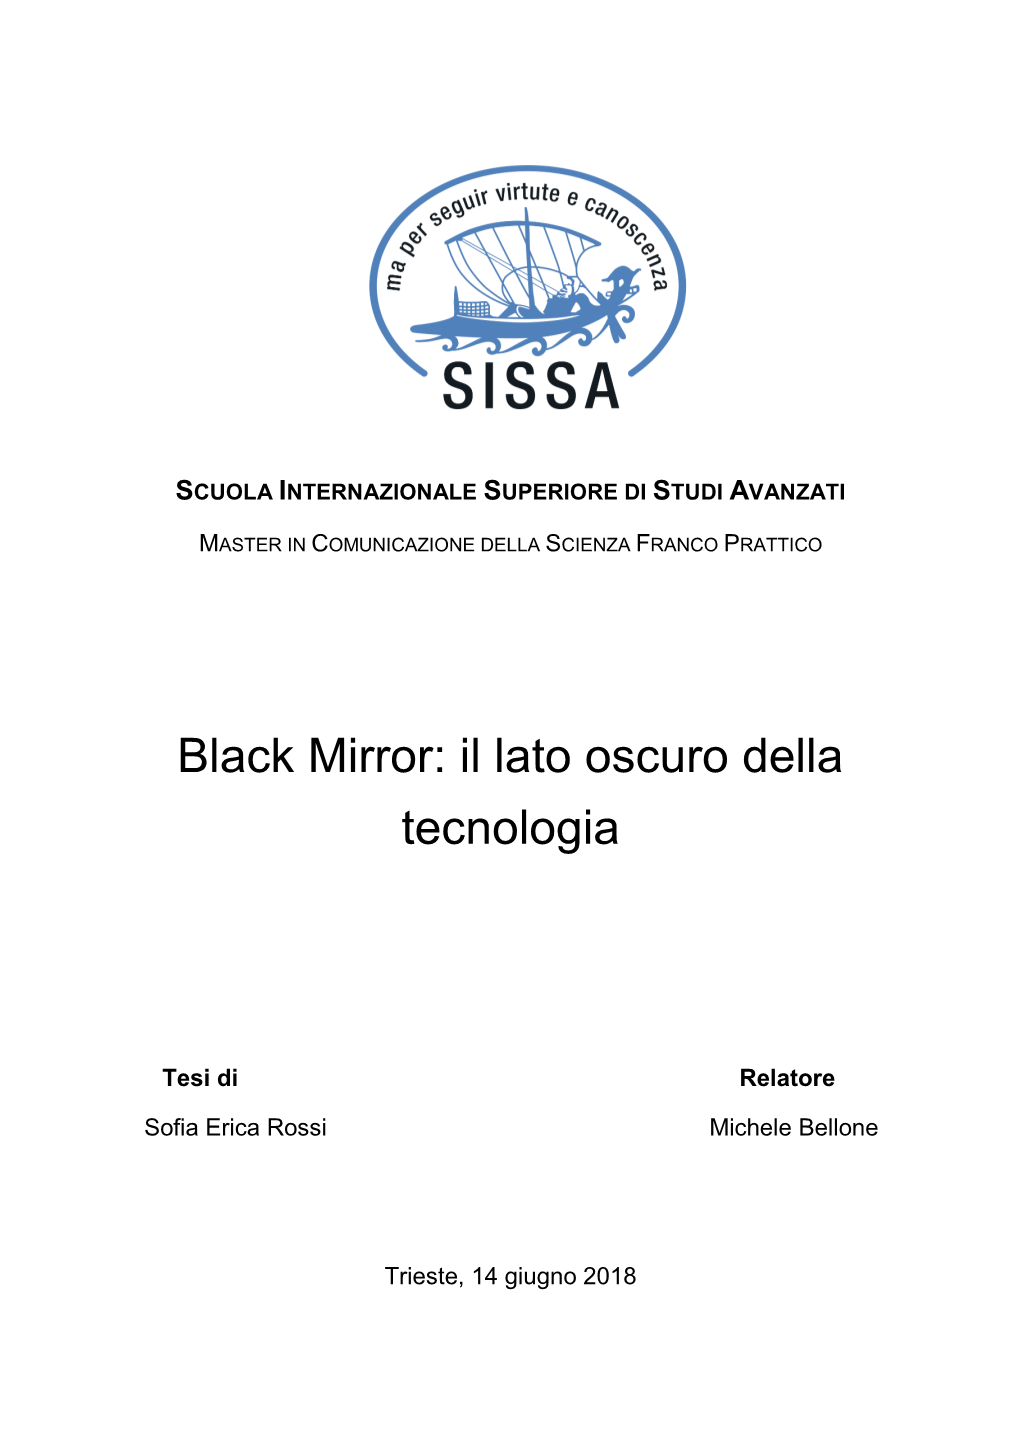 Black Mirror: Il Lato Oscuro Della Tecnologia